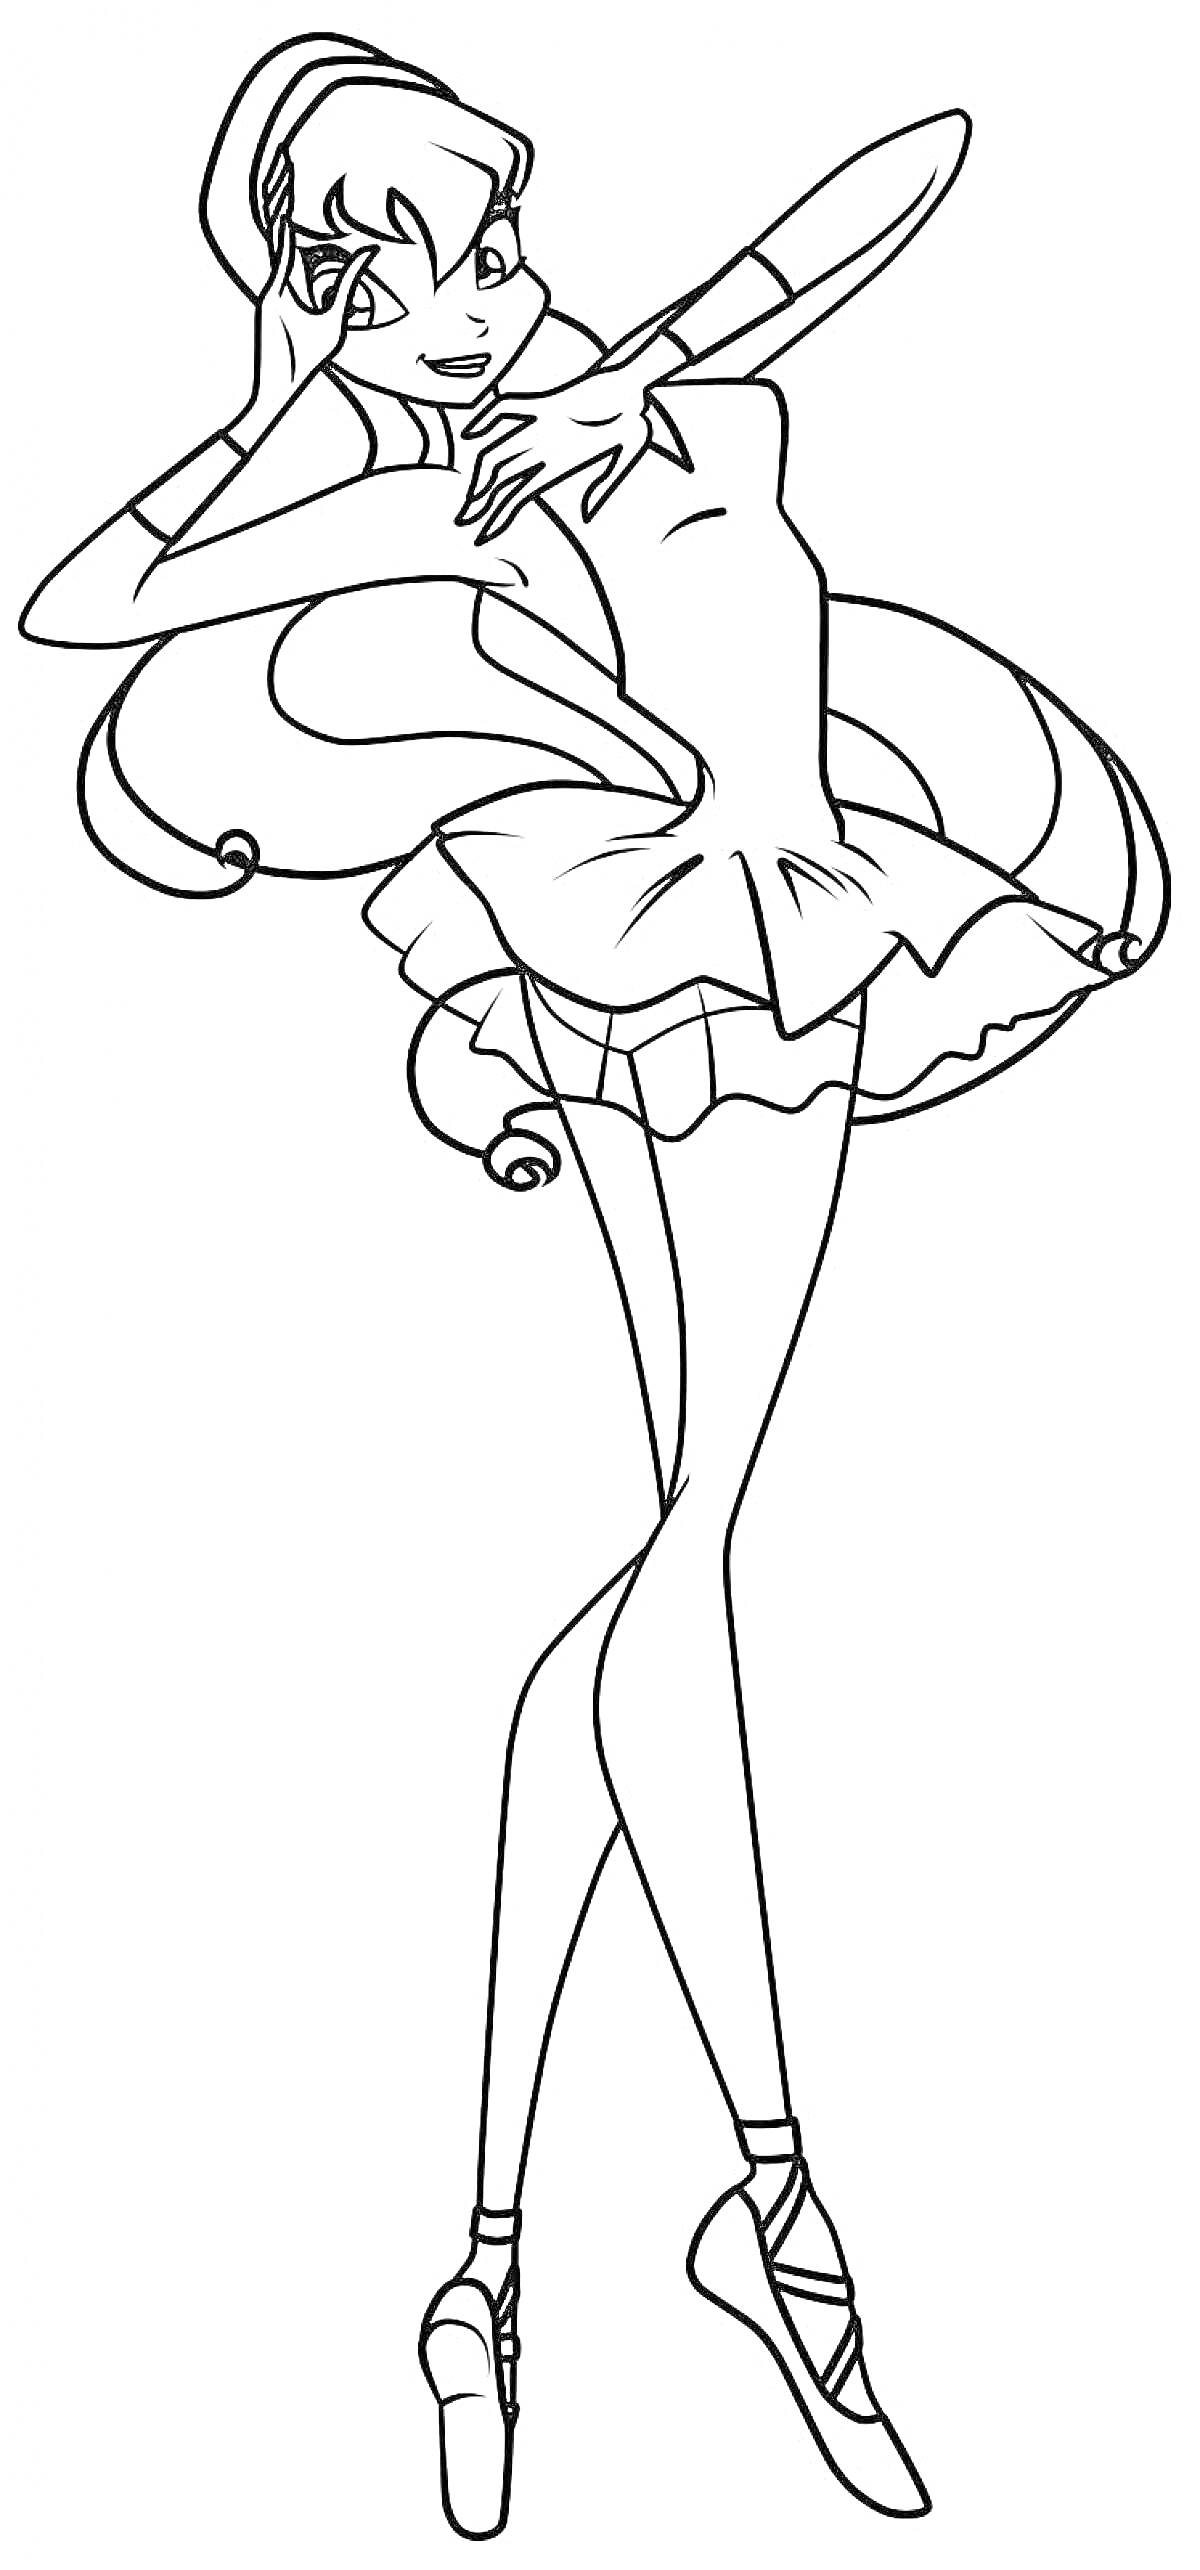 Раскраска Балерина в танце с высокой прической и платьем с рюшами